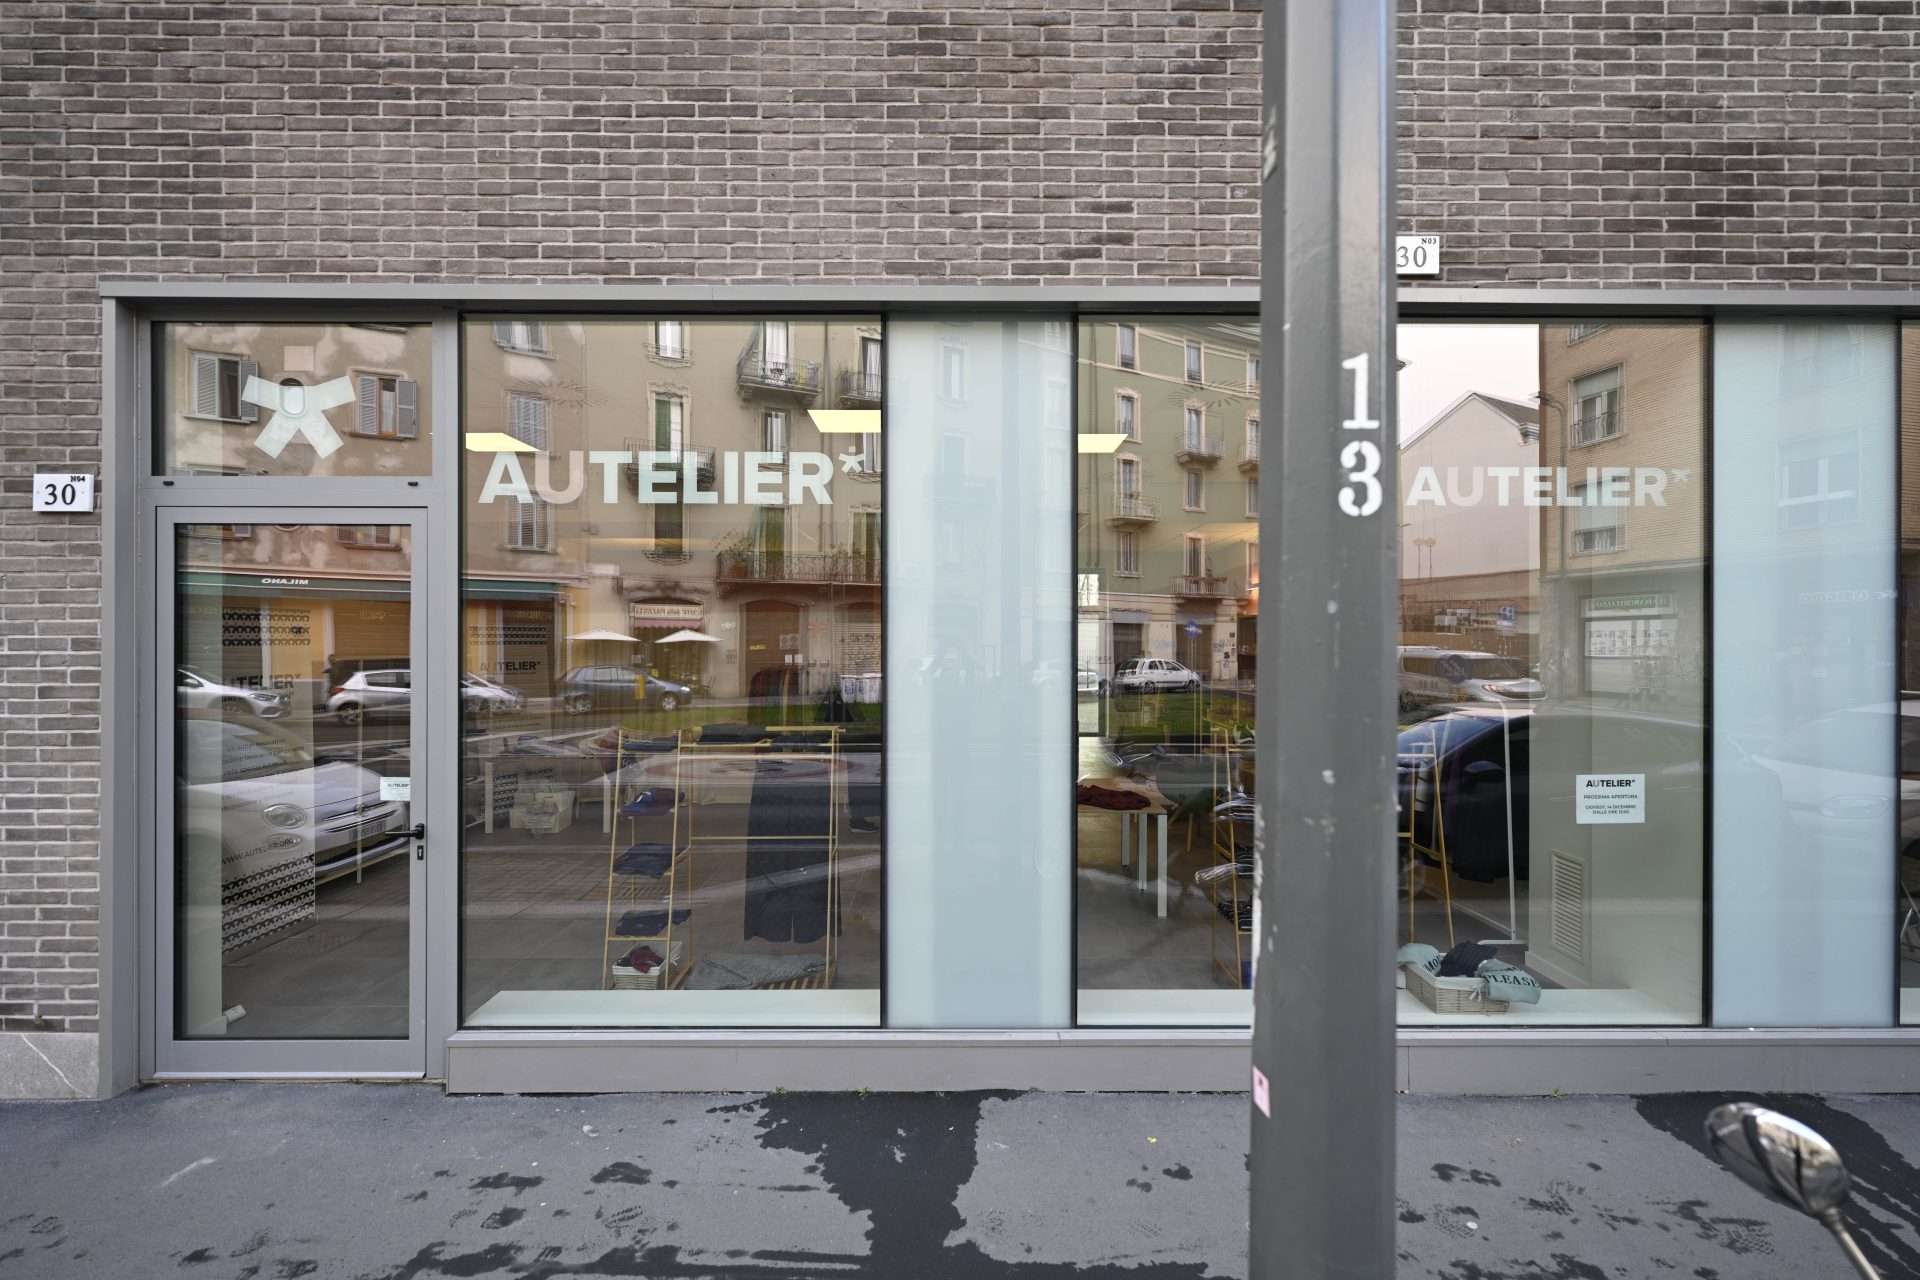 L'esterno del negozio visto dalla strasa, due vetrine con scritto "Autelier"